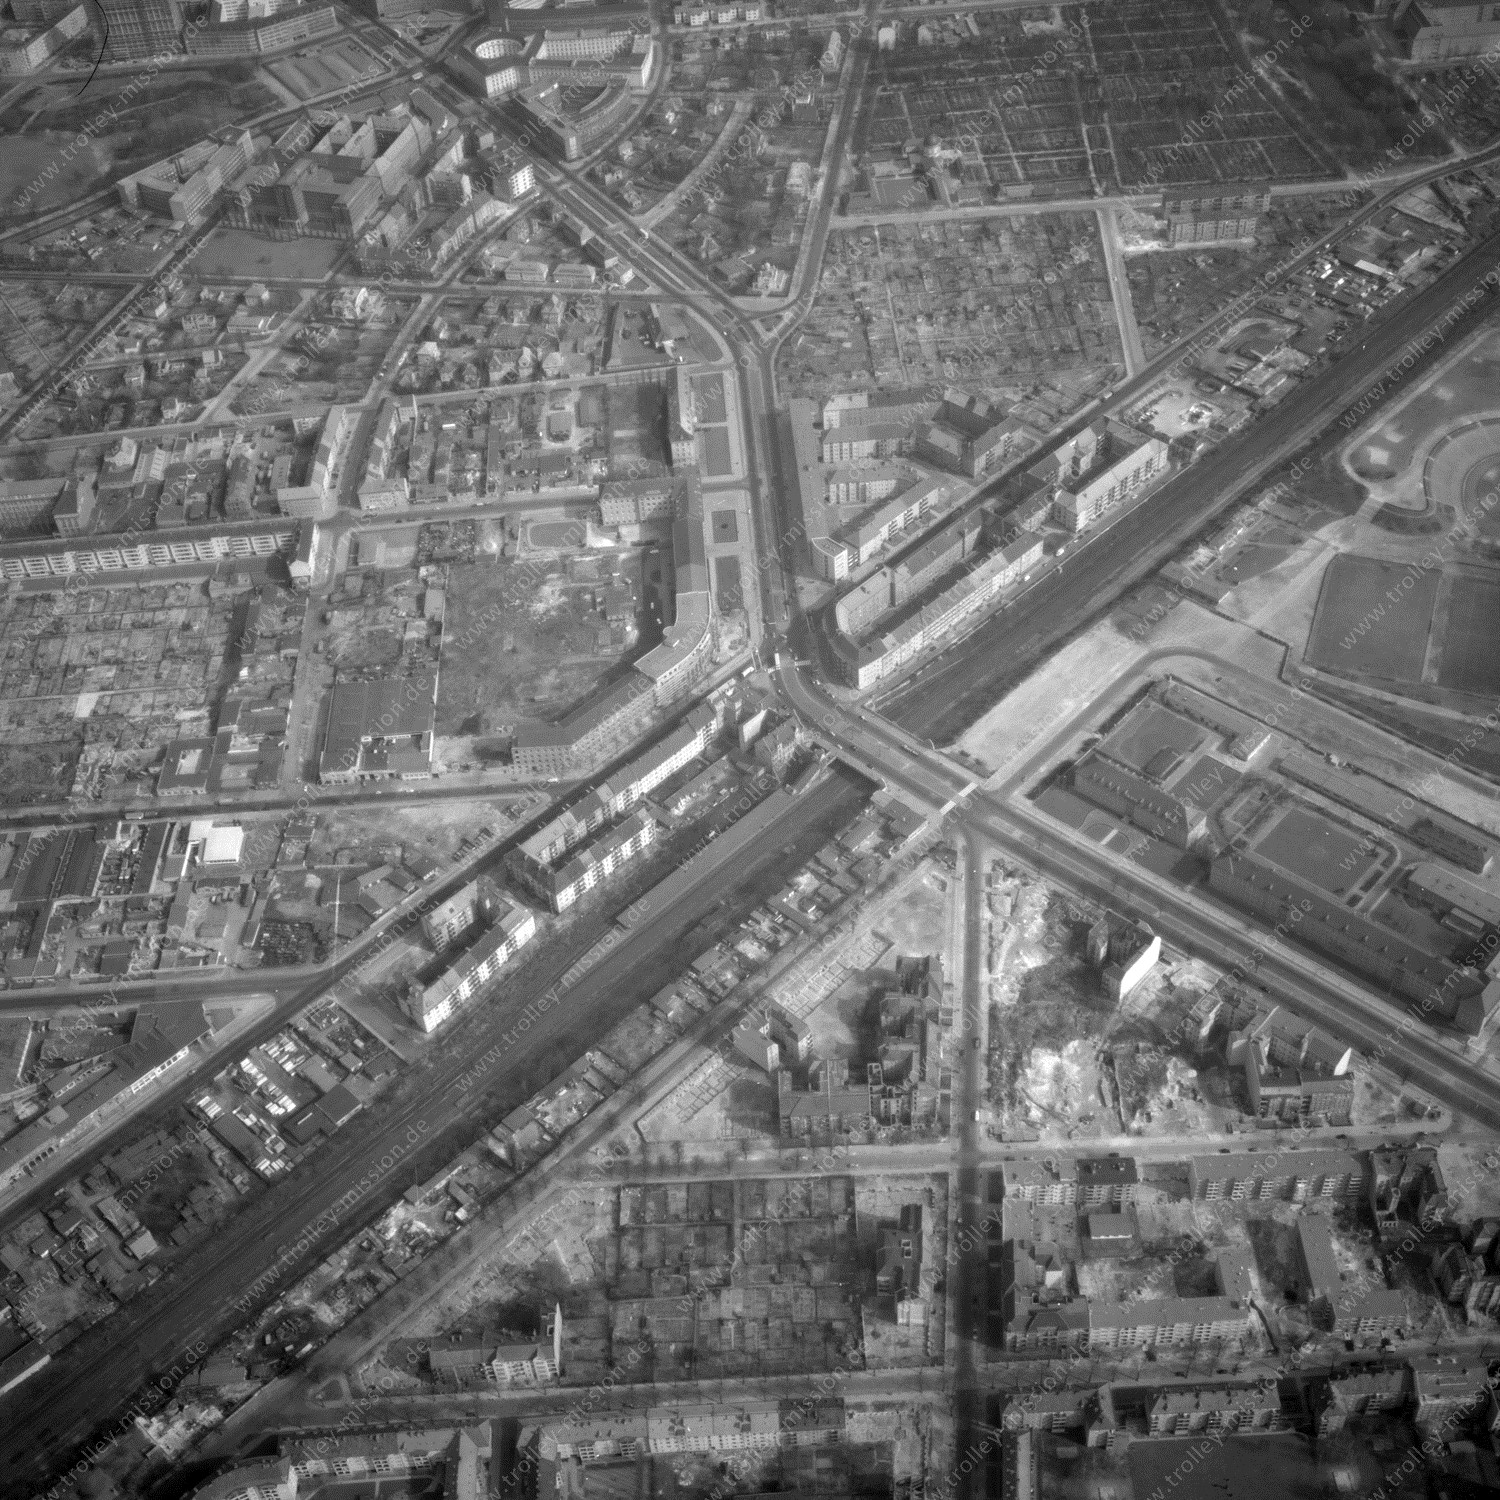 Alte Fotos und Luftbilder von Berlin - Luftbildaufnahme Nr. 05 - Historische Luftaufnahmen von West-Berlin aus dem Jahr 1954 - Flugstrecke Bravo